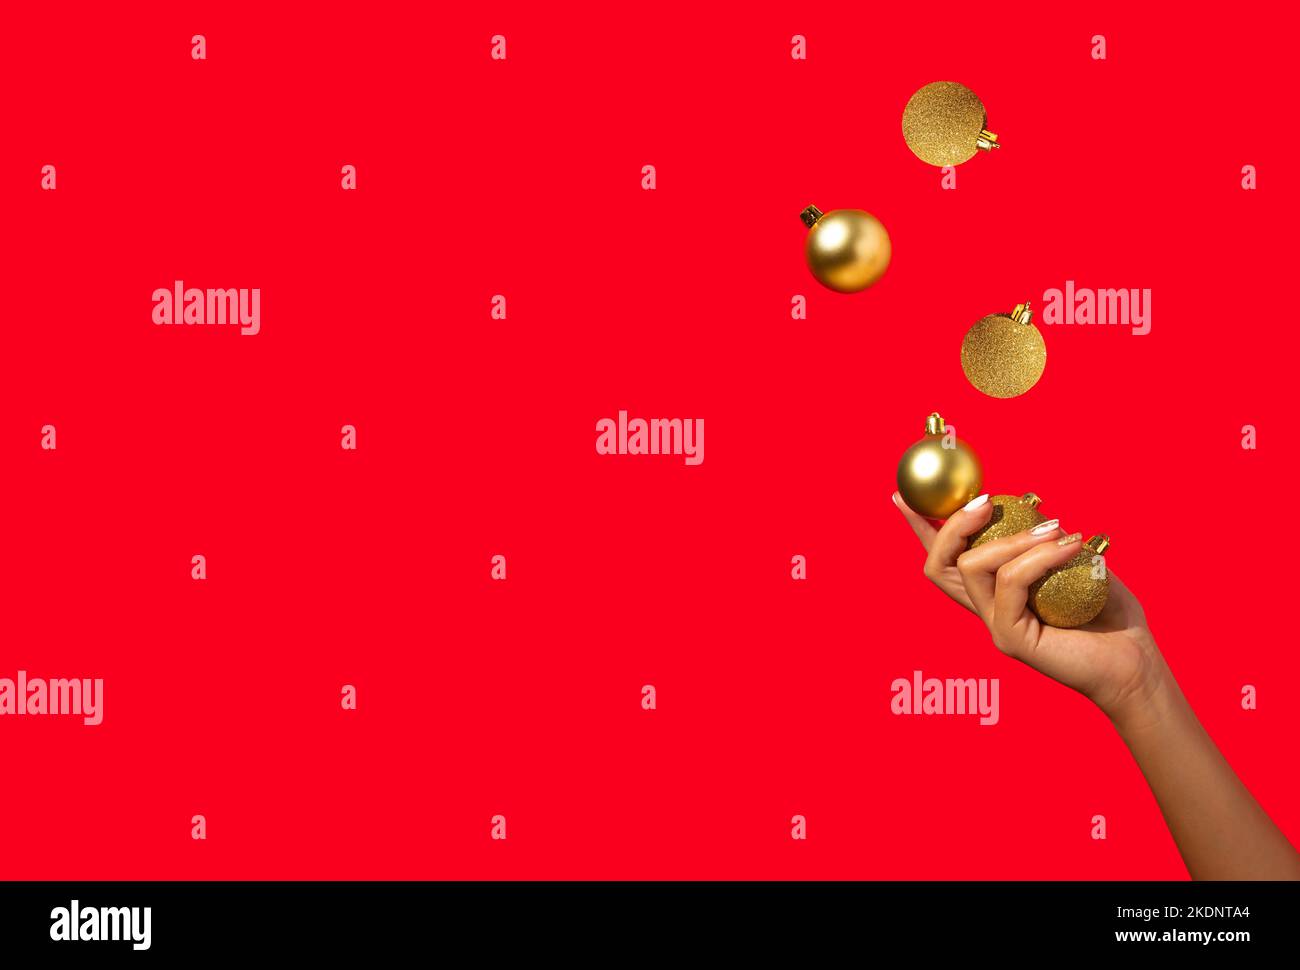 La main de femme jonglant avec des boules de Noël dorées sur fond rouge. Concept de vacances minimal. Bonne Année. Copier l'espace. Banque D'Images